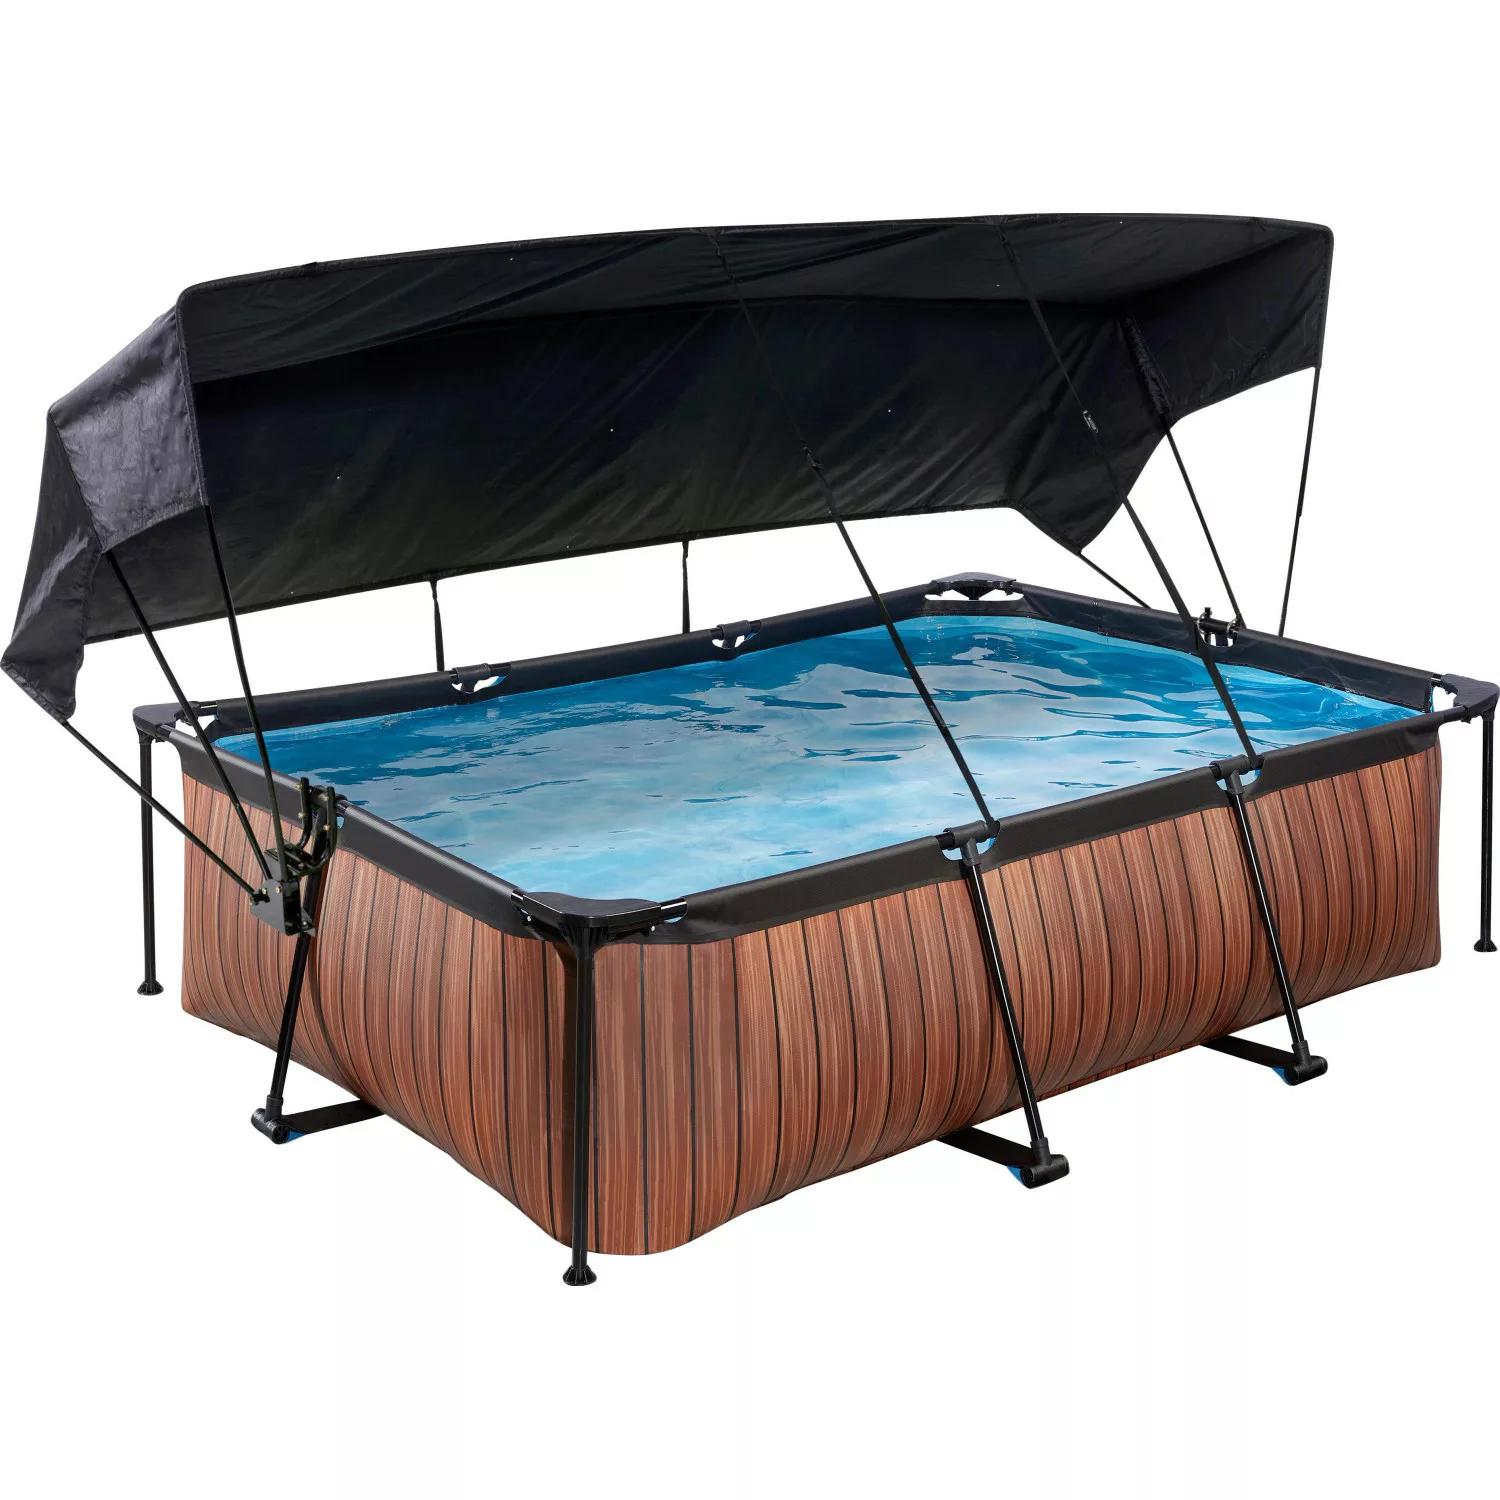 EXIT Wood Pool Braun 220 x 150 x 65 cm m. Filterpumpe u. Sonnensegel günstig online kaufen